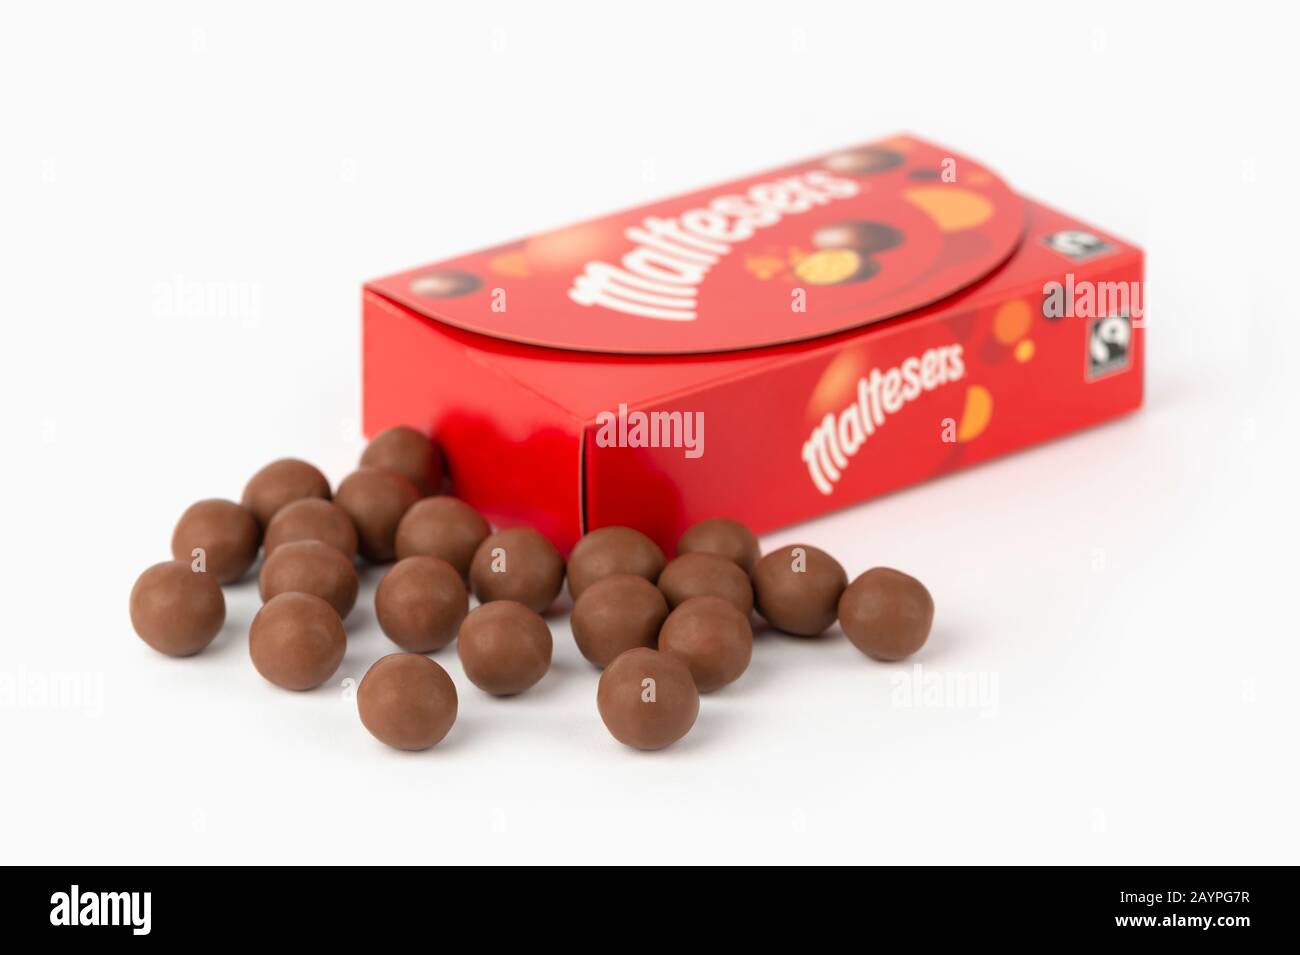 Certains chocolats Maltesers sont tournés sur un fond blanc avec l'emballage de la boîte du produit. Banque D'Images